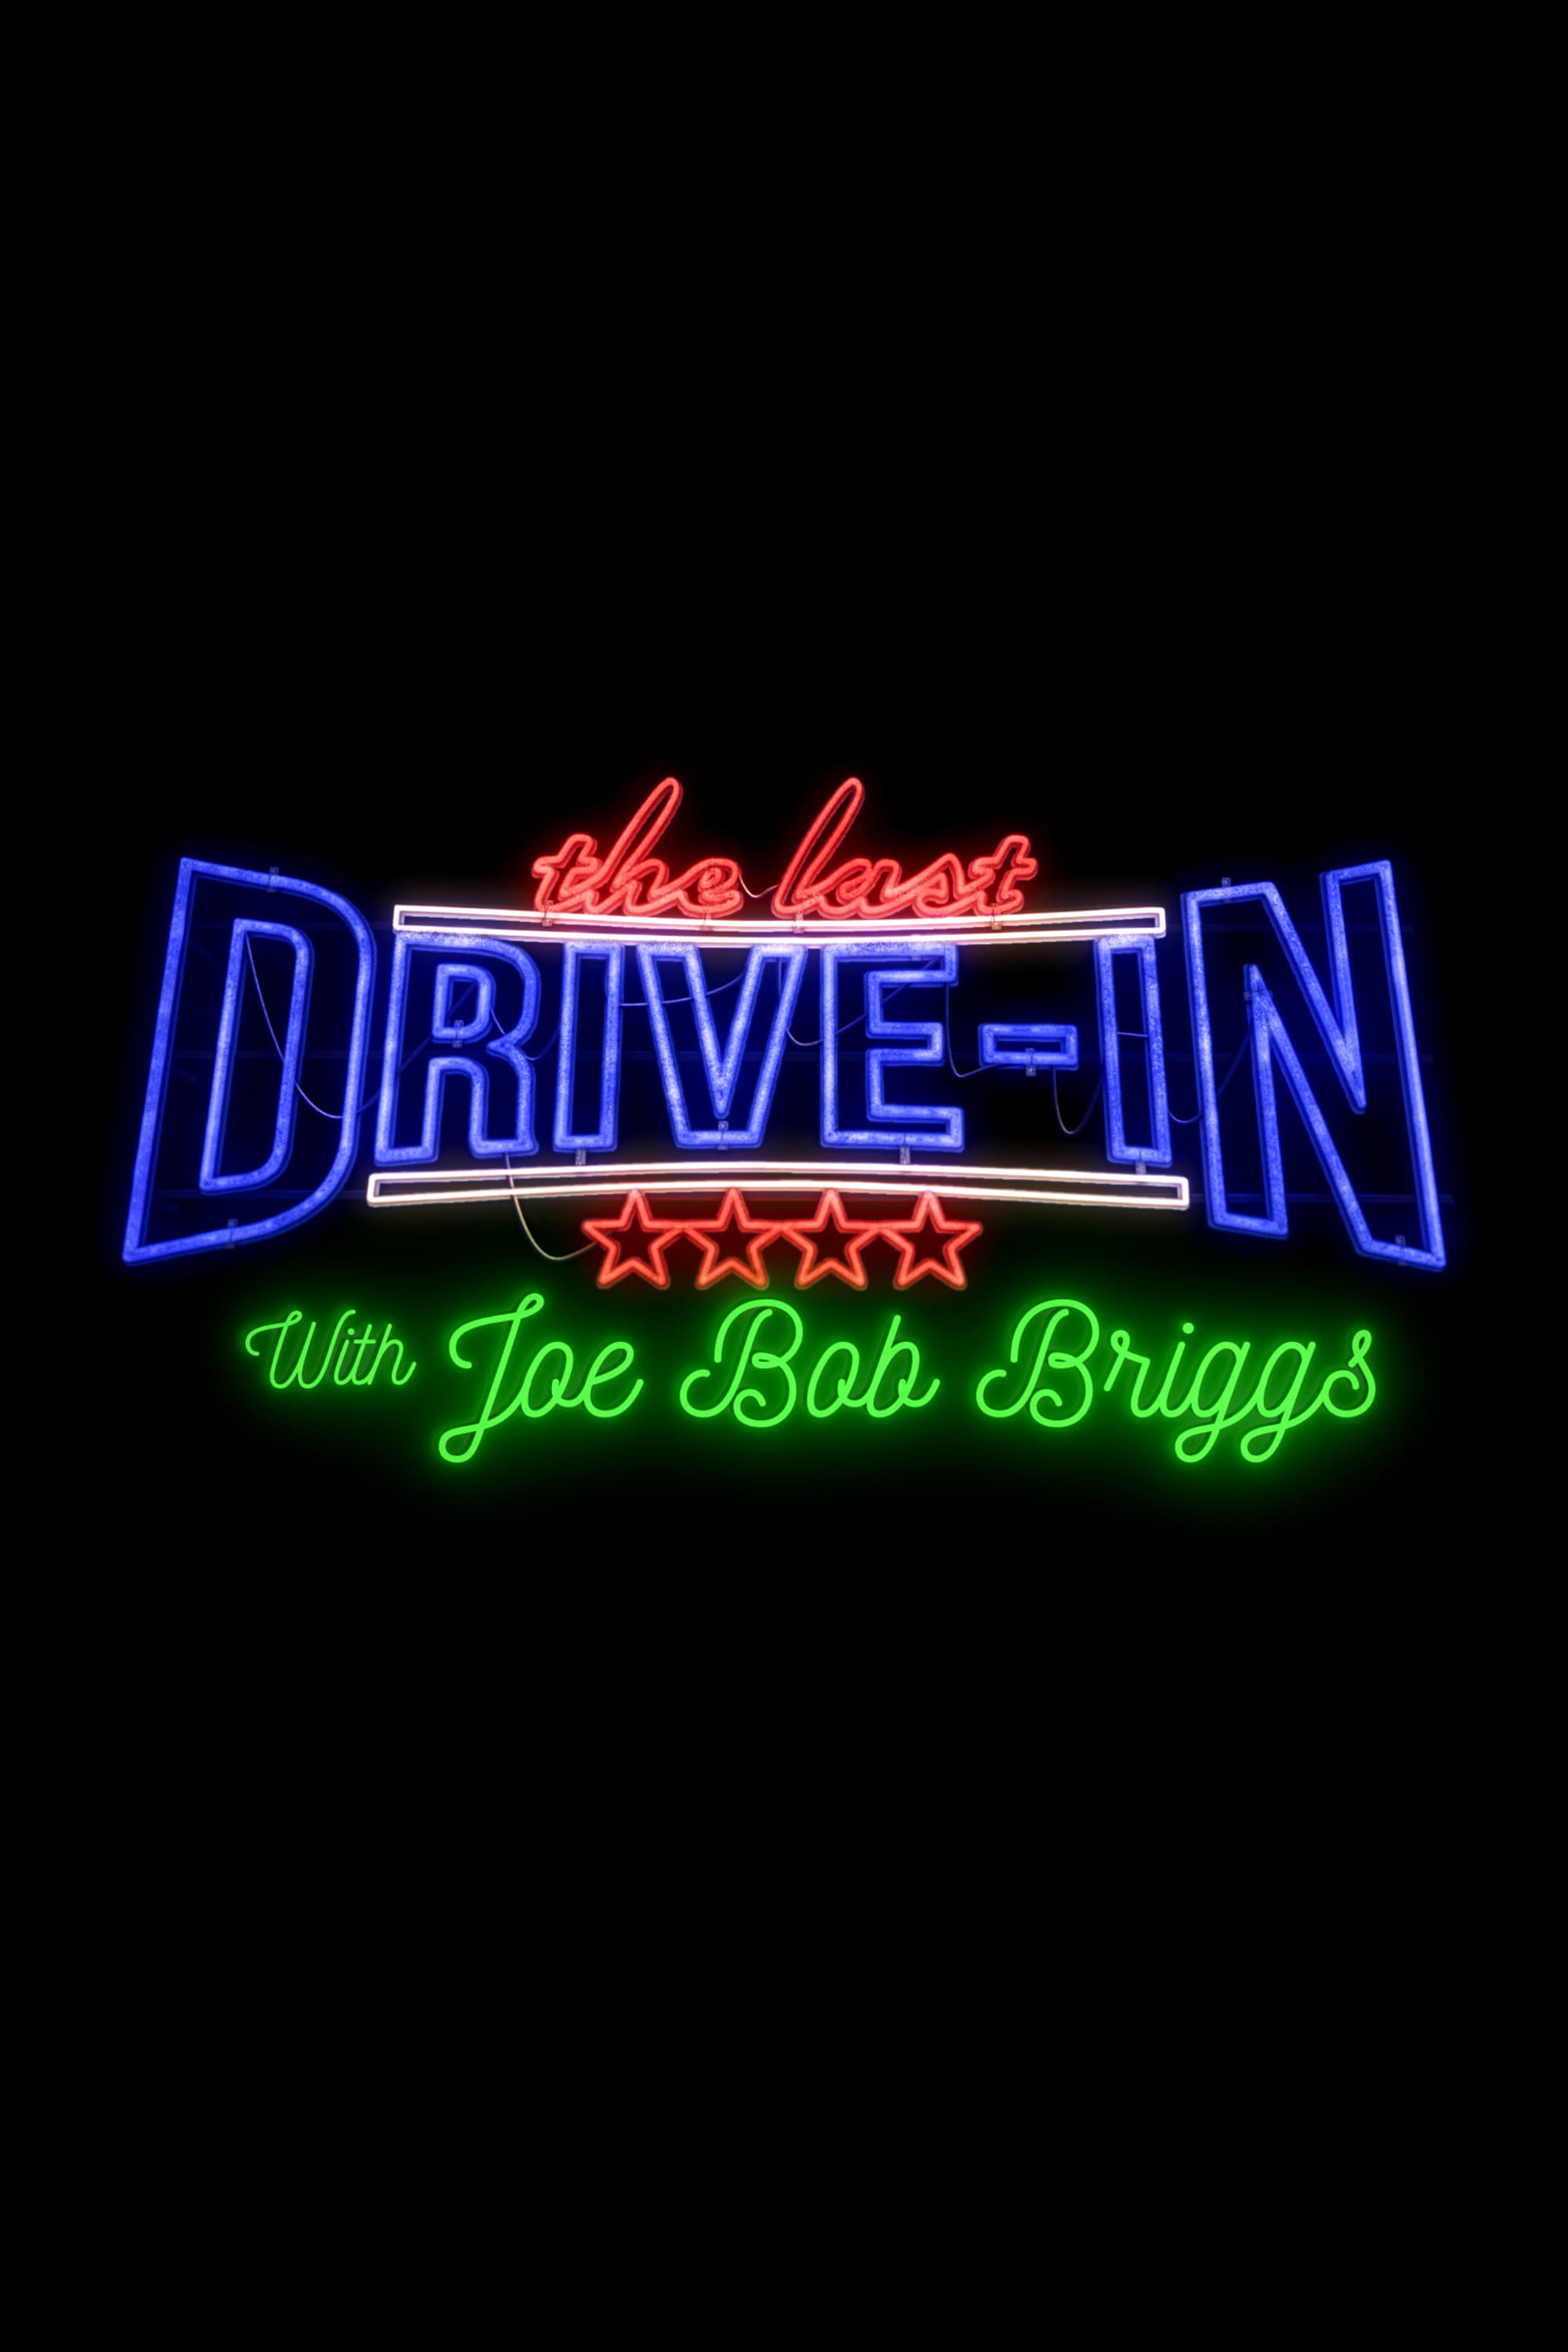 The Last Drive-in With Joe Bob Briggs (2018)